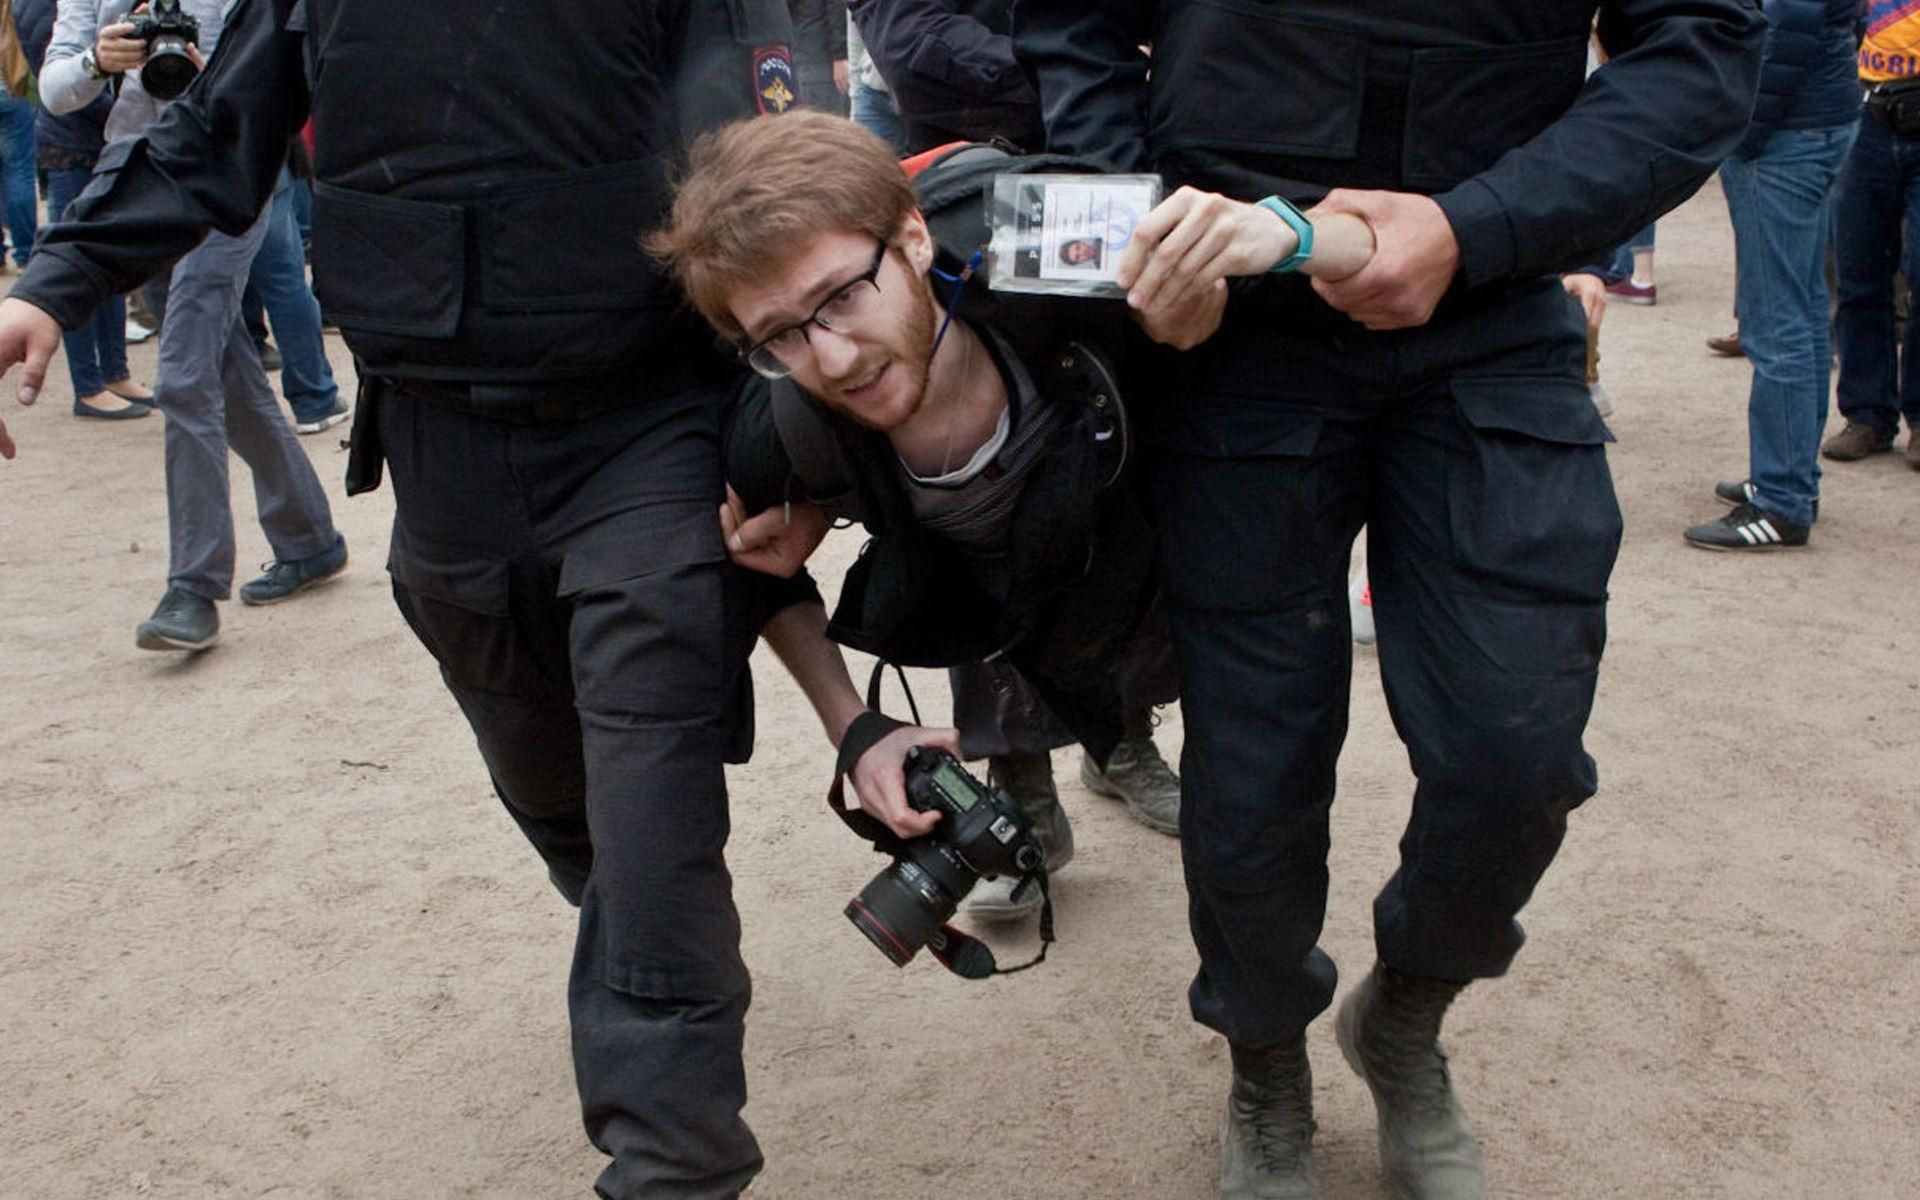 Нападение на журналиста. Задержание журналиста. Нападение на журналистов на митинге.